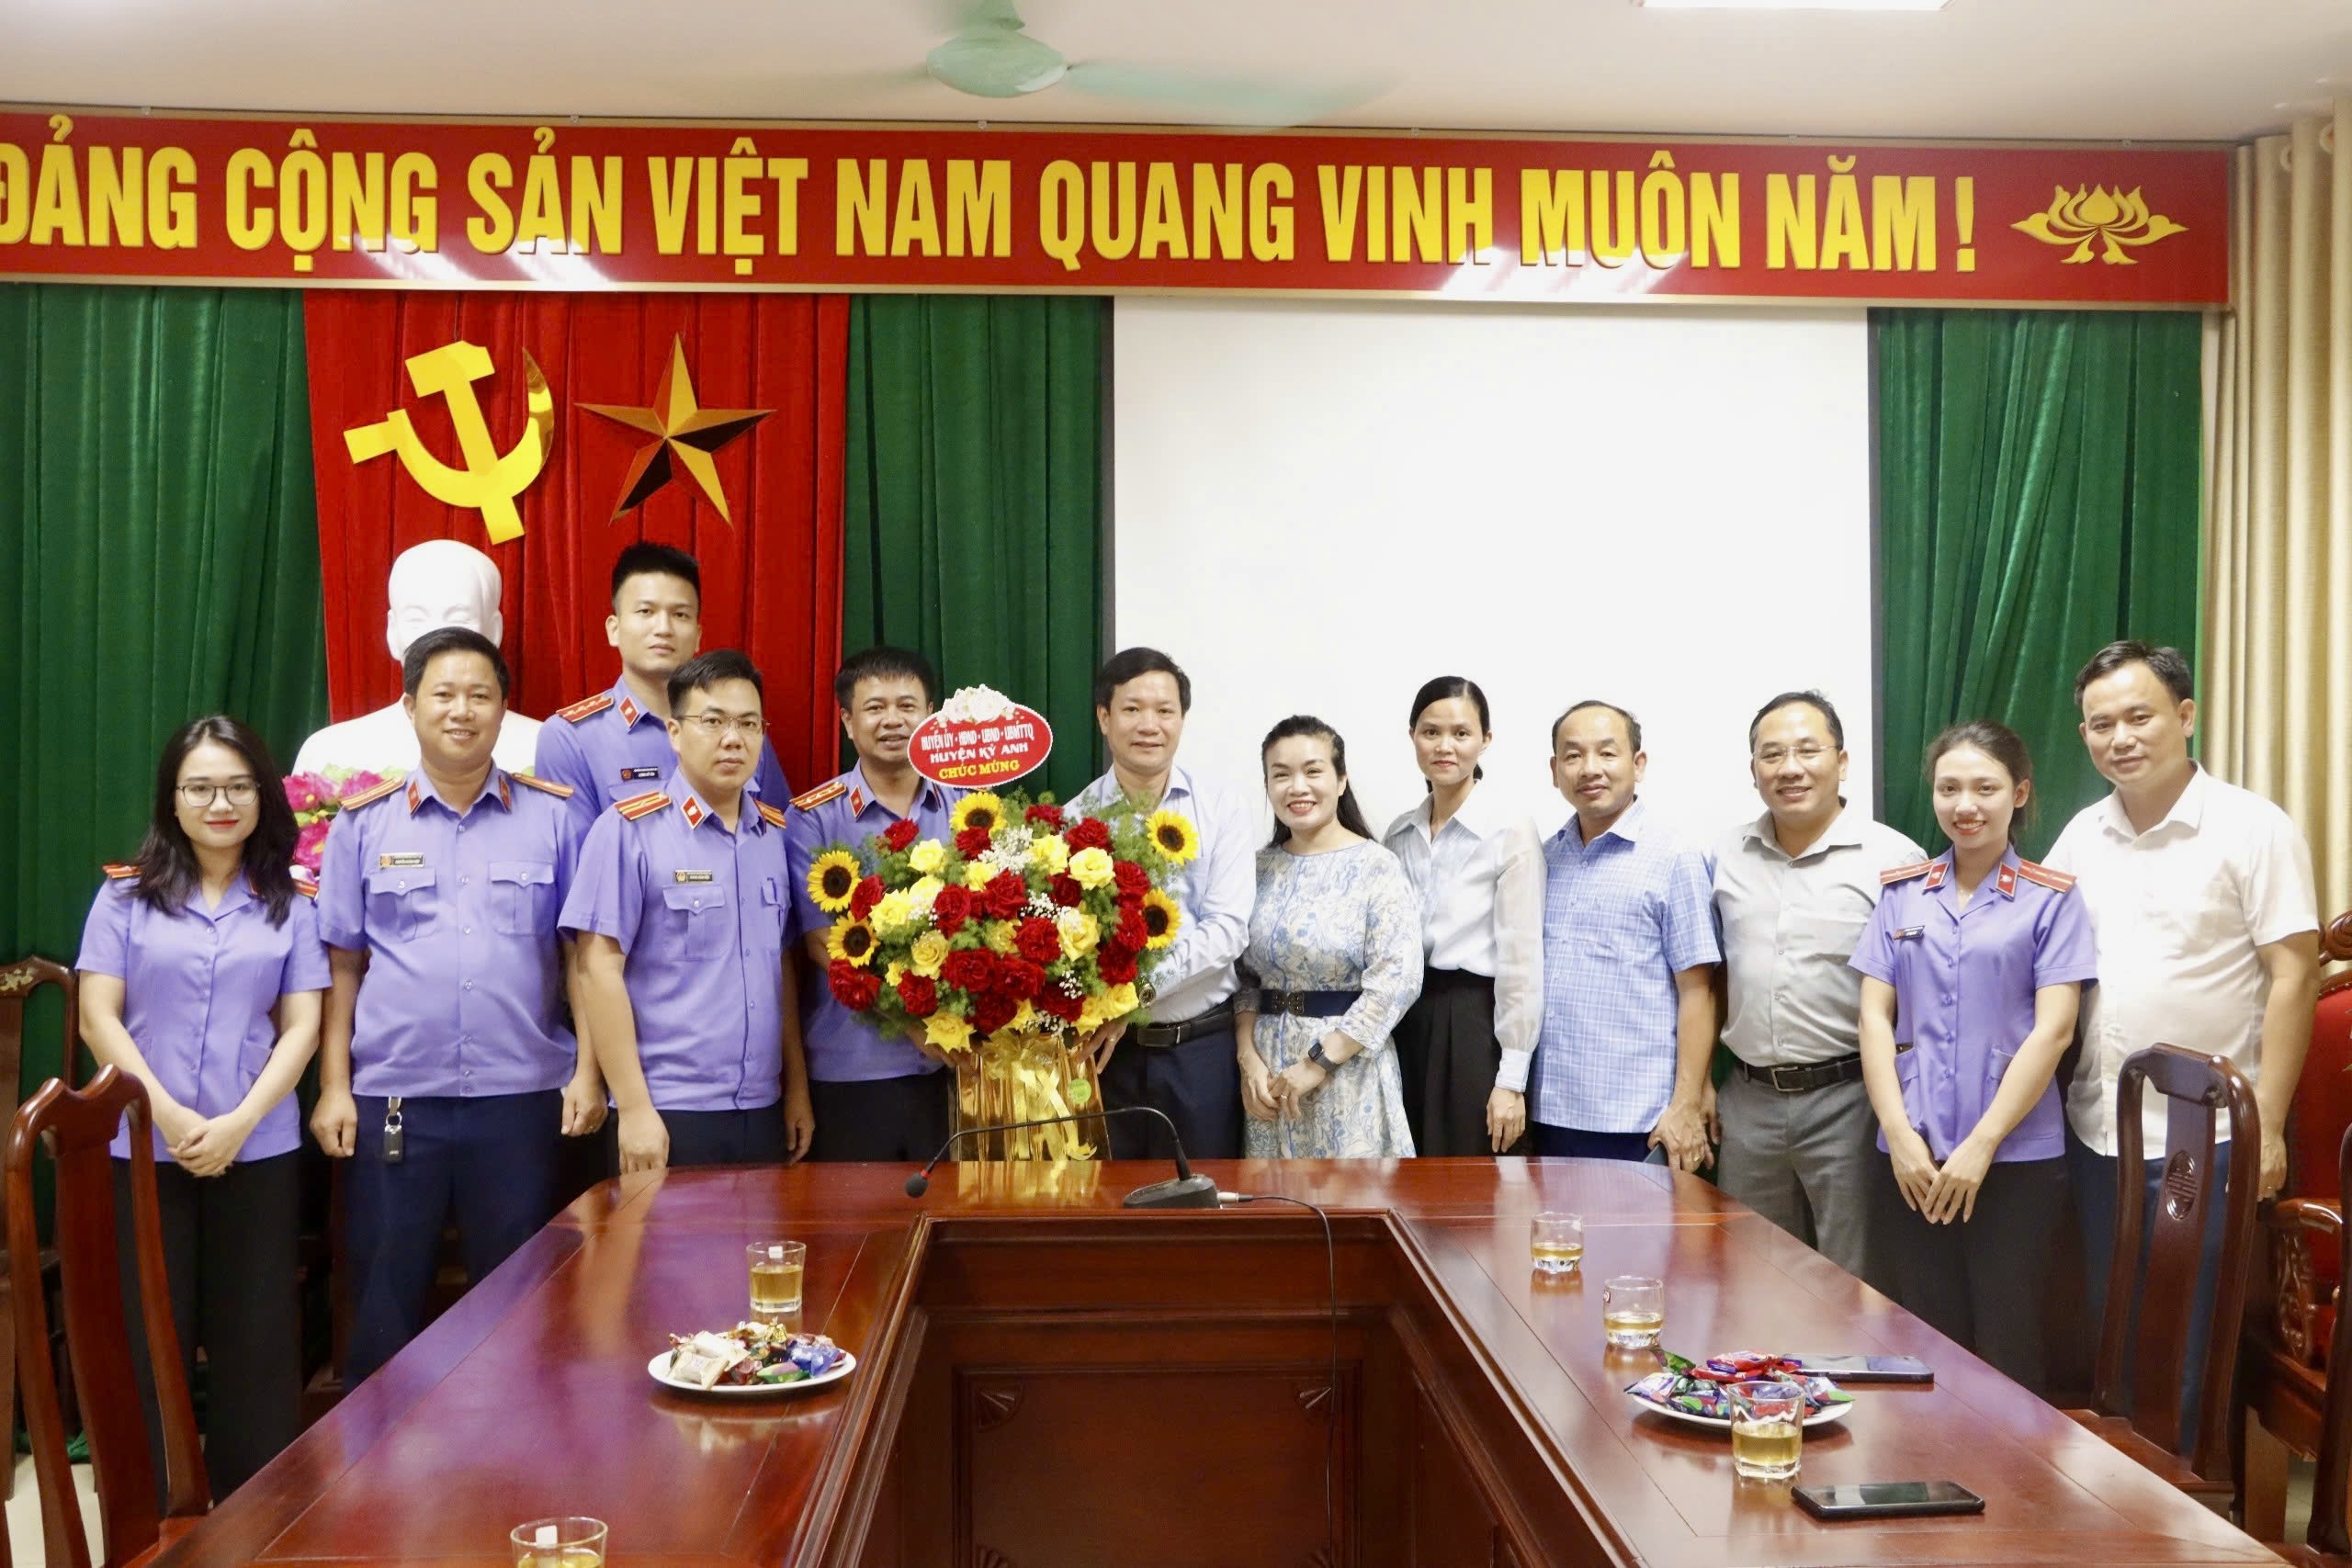 Chúc mừng 64 năm Ngày thành lập Viện kiểm sát nhân dân và 95 năm Ngày thành lập Công đoàn Việt Nam